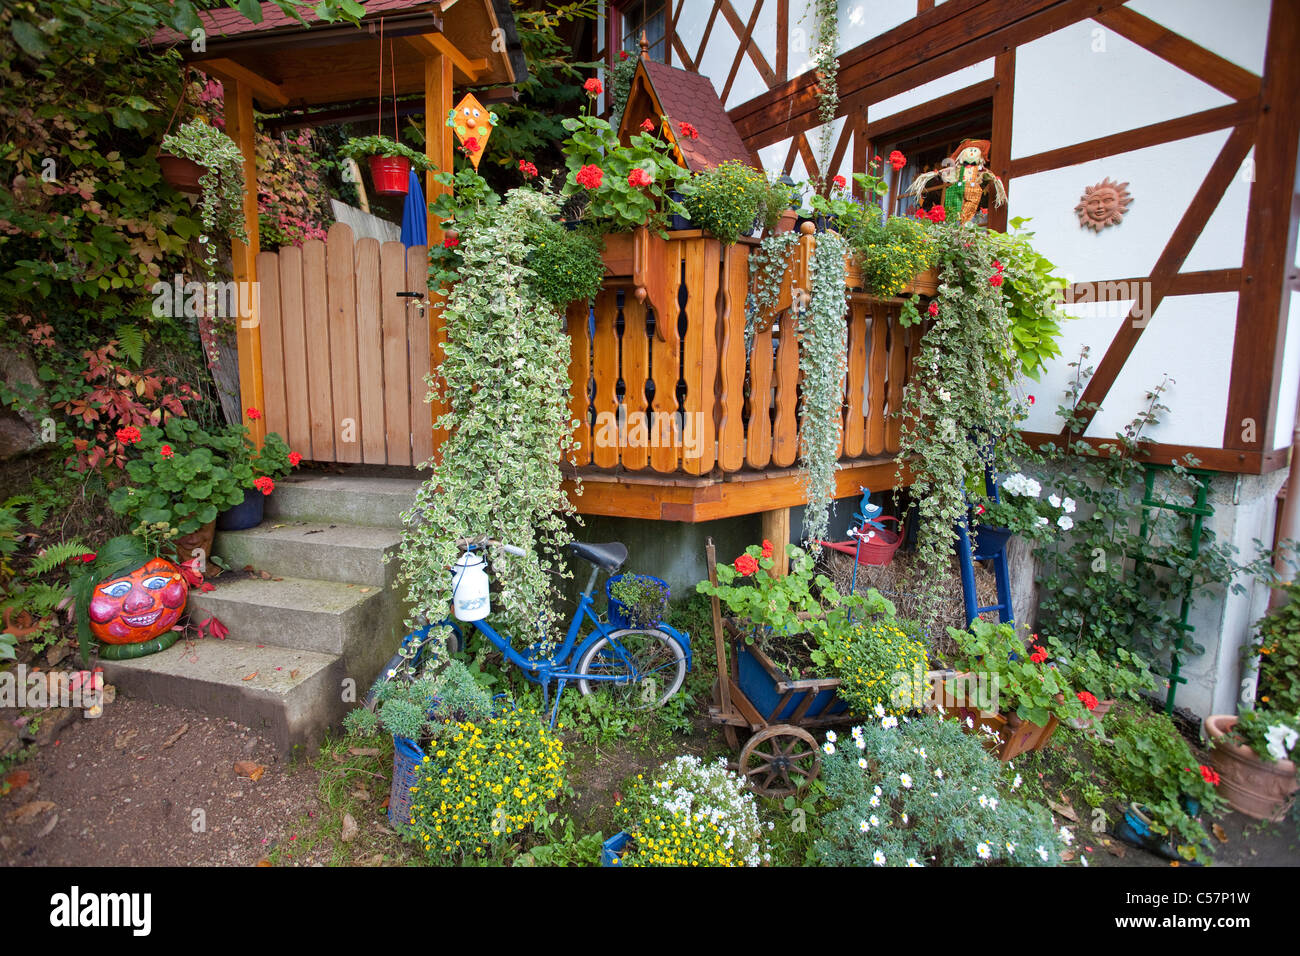 Bauernhaus, Bauerngarten in Sasbachwalden Farmer house half-timbered with flower decoration, farmer garden Stock Photo